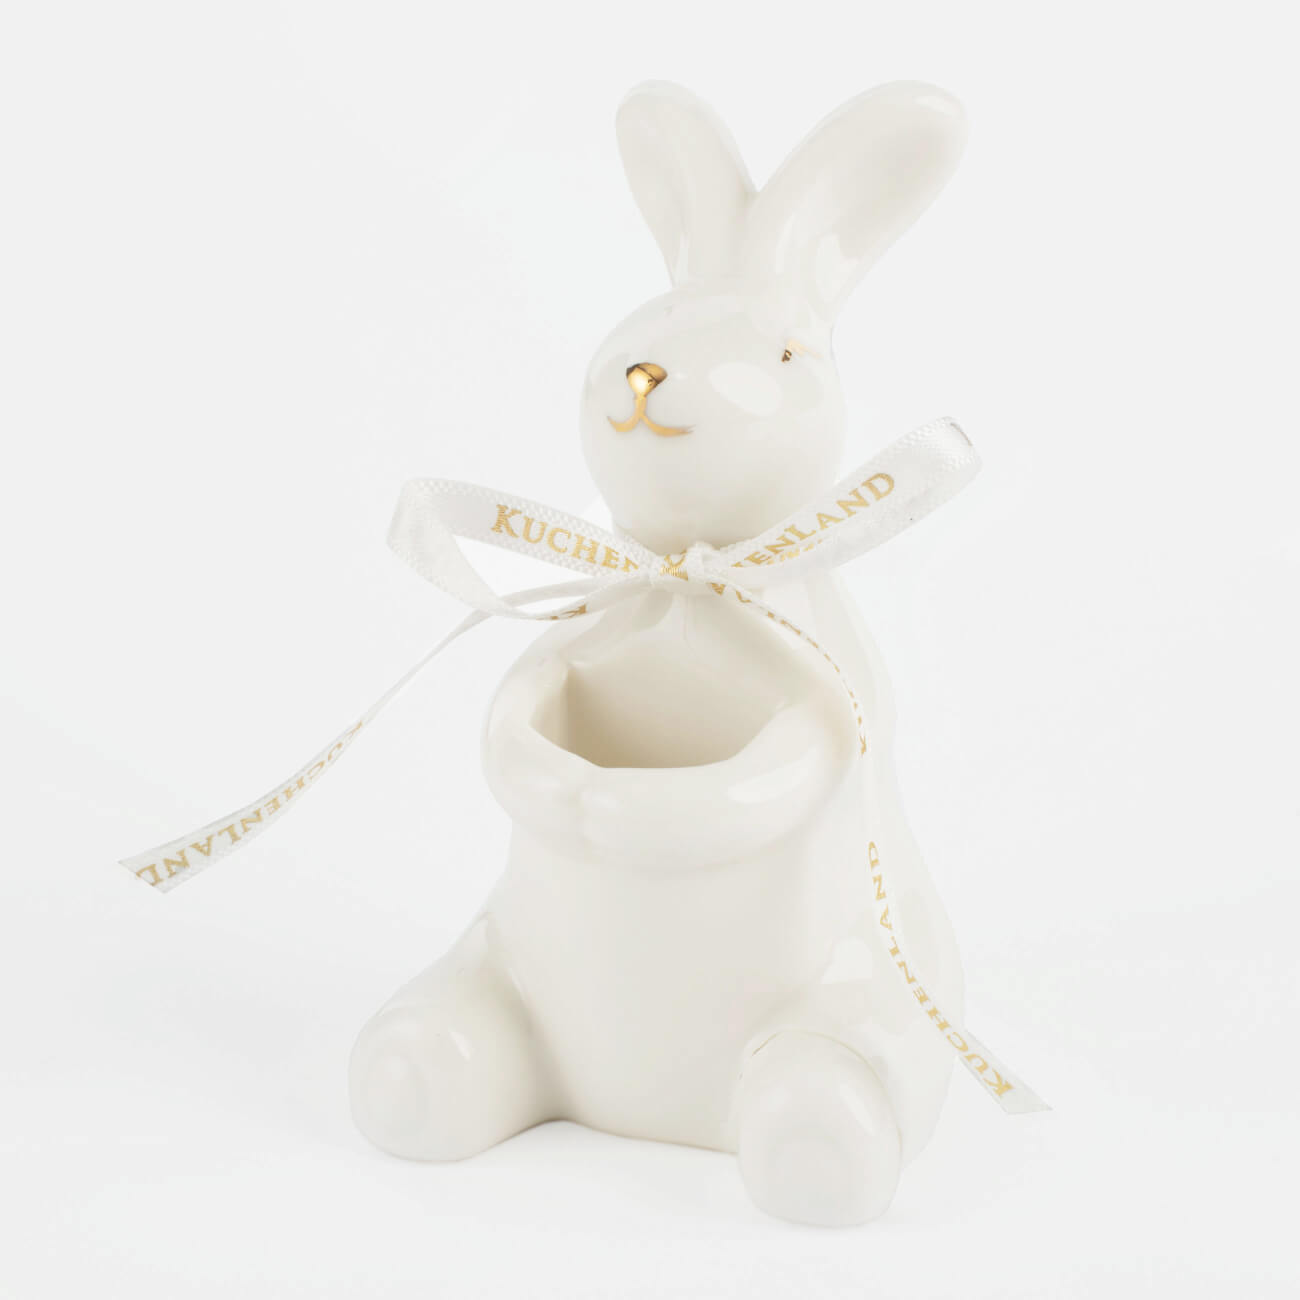 подставка для яйца 11 см керамика бело золотистая кролик со скорлупой easter gold Подставка для зубочисток, 10 см, фарфор P, бело-золотистая, Кролик, Easter gold